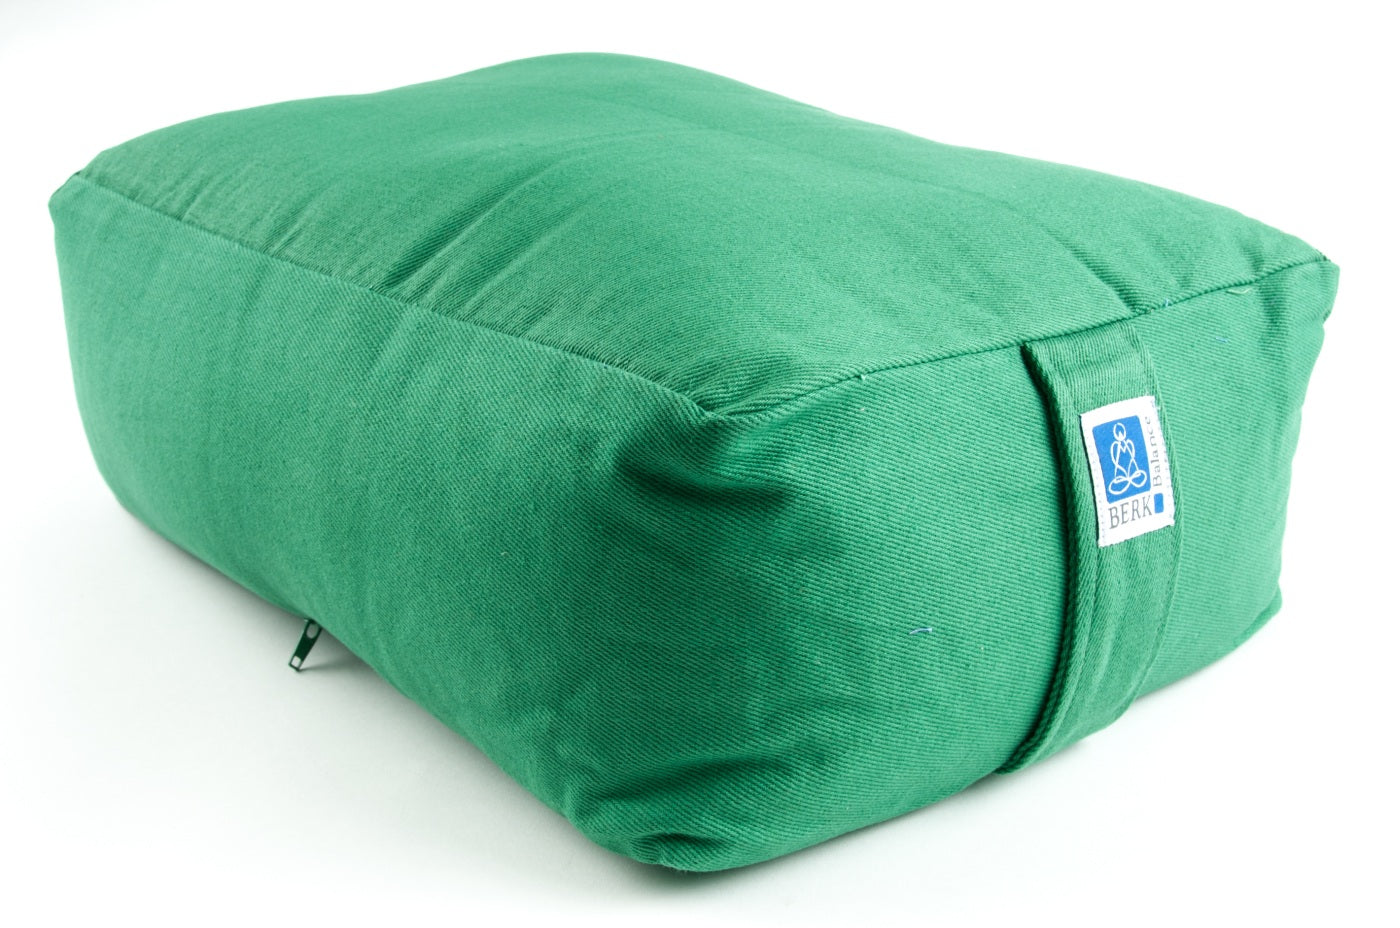 Cuboid meditation cushion green